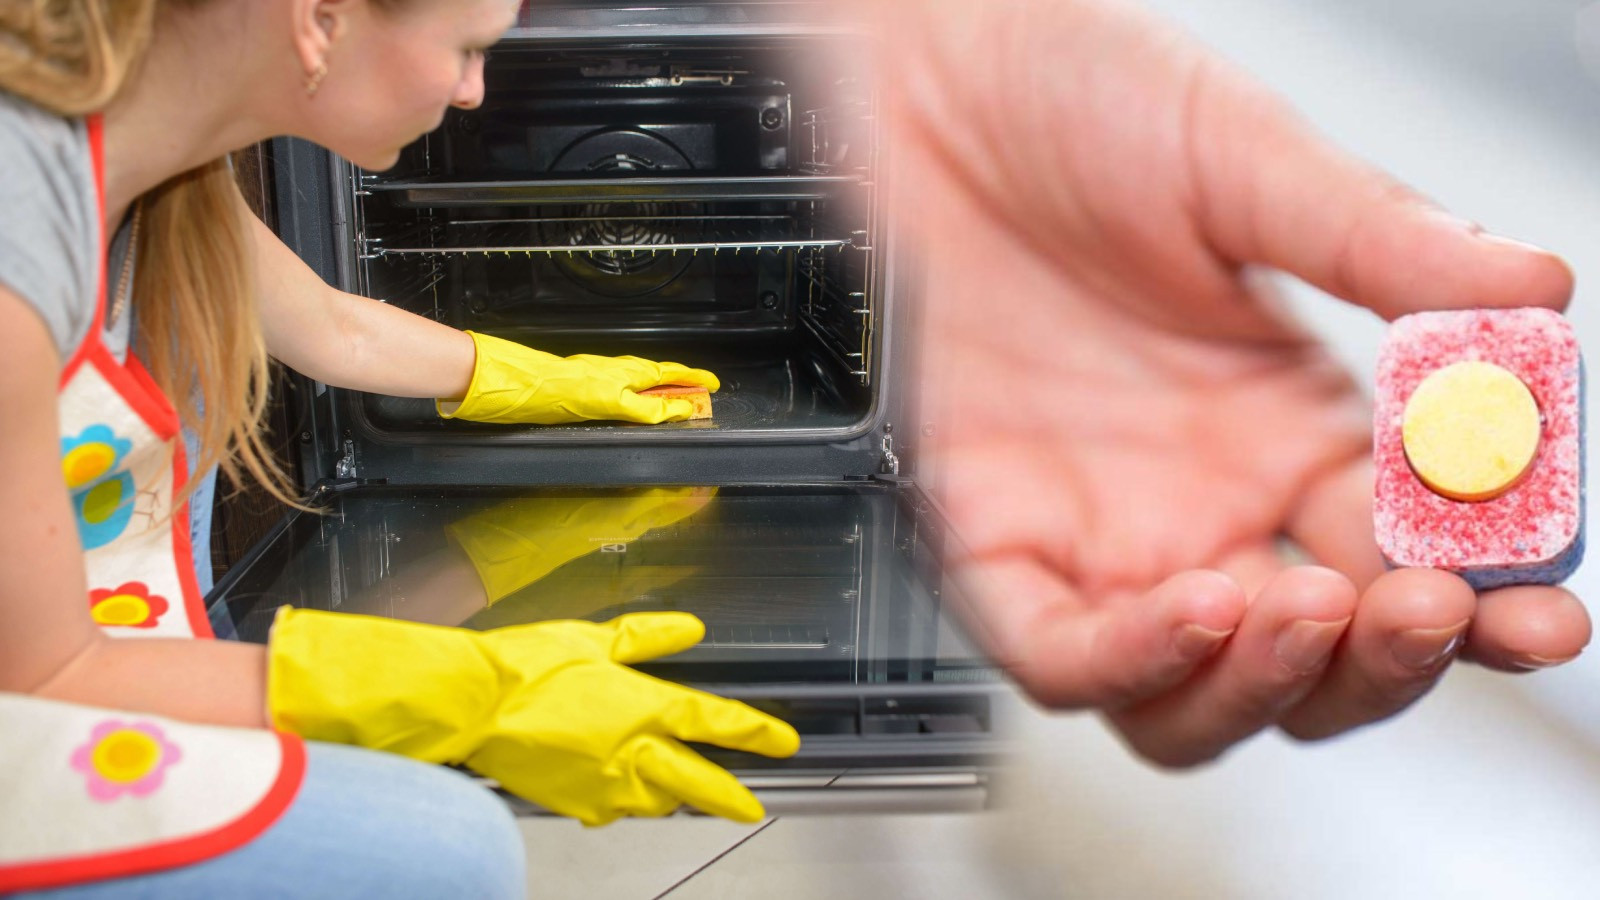 Fırın ve ocak gibi sıkça kullanılan mutfak ekipmanları, hızla kirlenebilir ve temizlenmesi zaman alabilir.